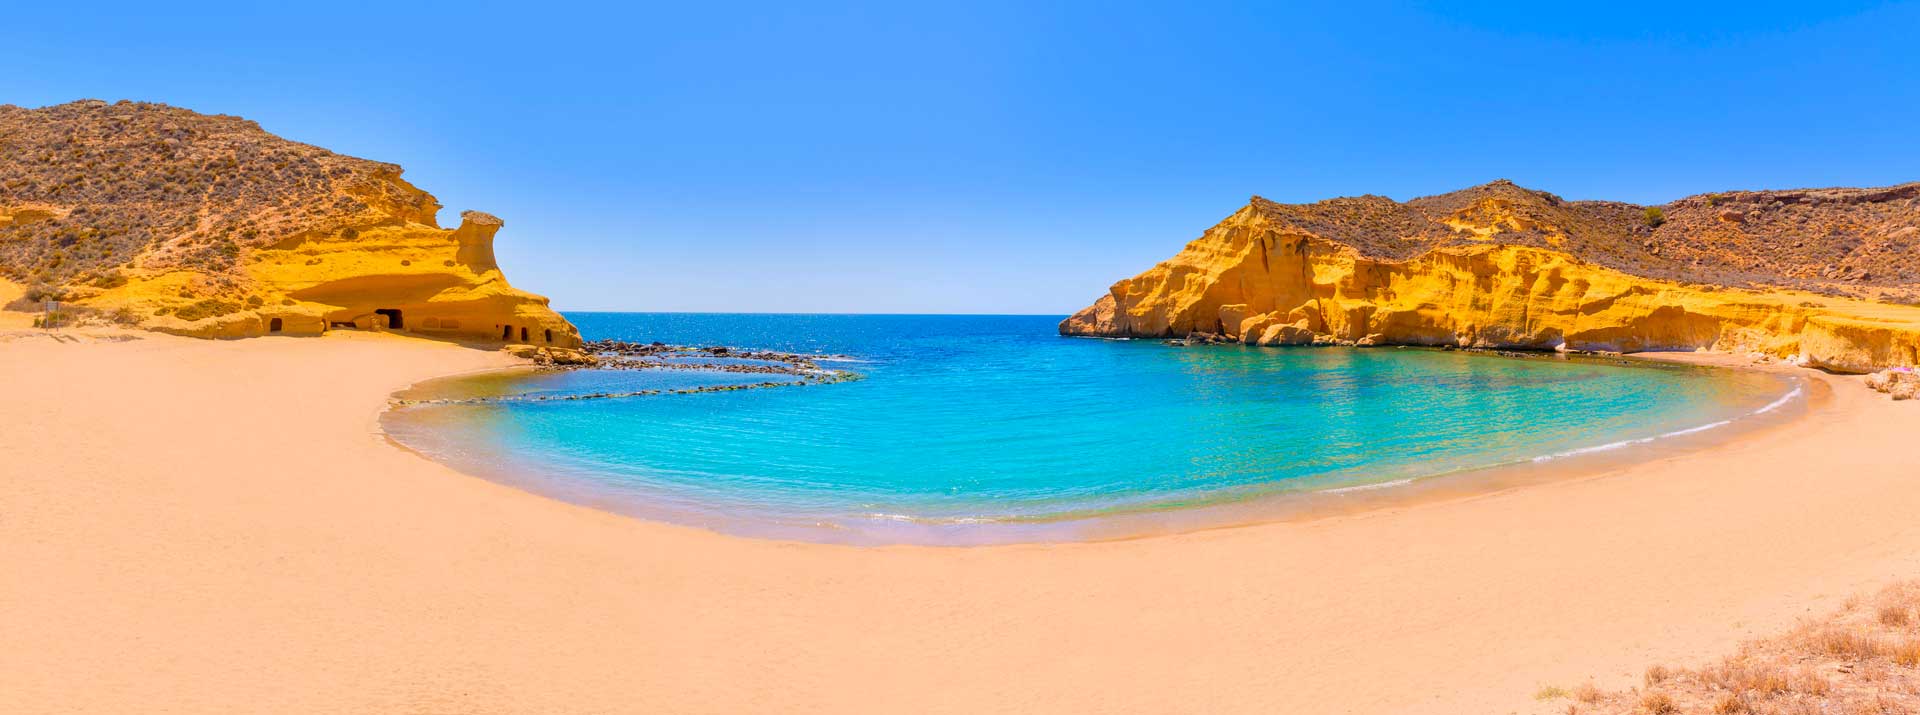 Des plages magnifiques, des eaux cristallines, un superbe château, deux îles désertiques, la géode la plus grande du monde... une région d'Espagne qui gagne à être connue !